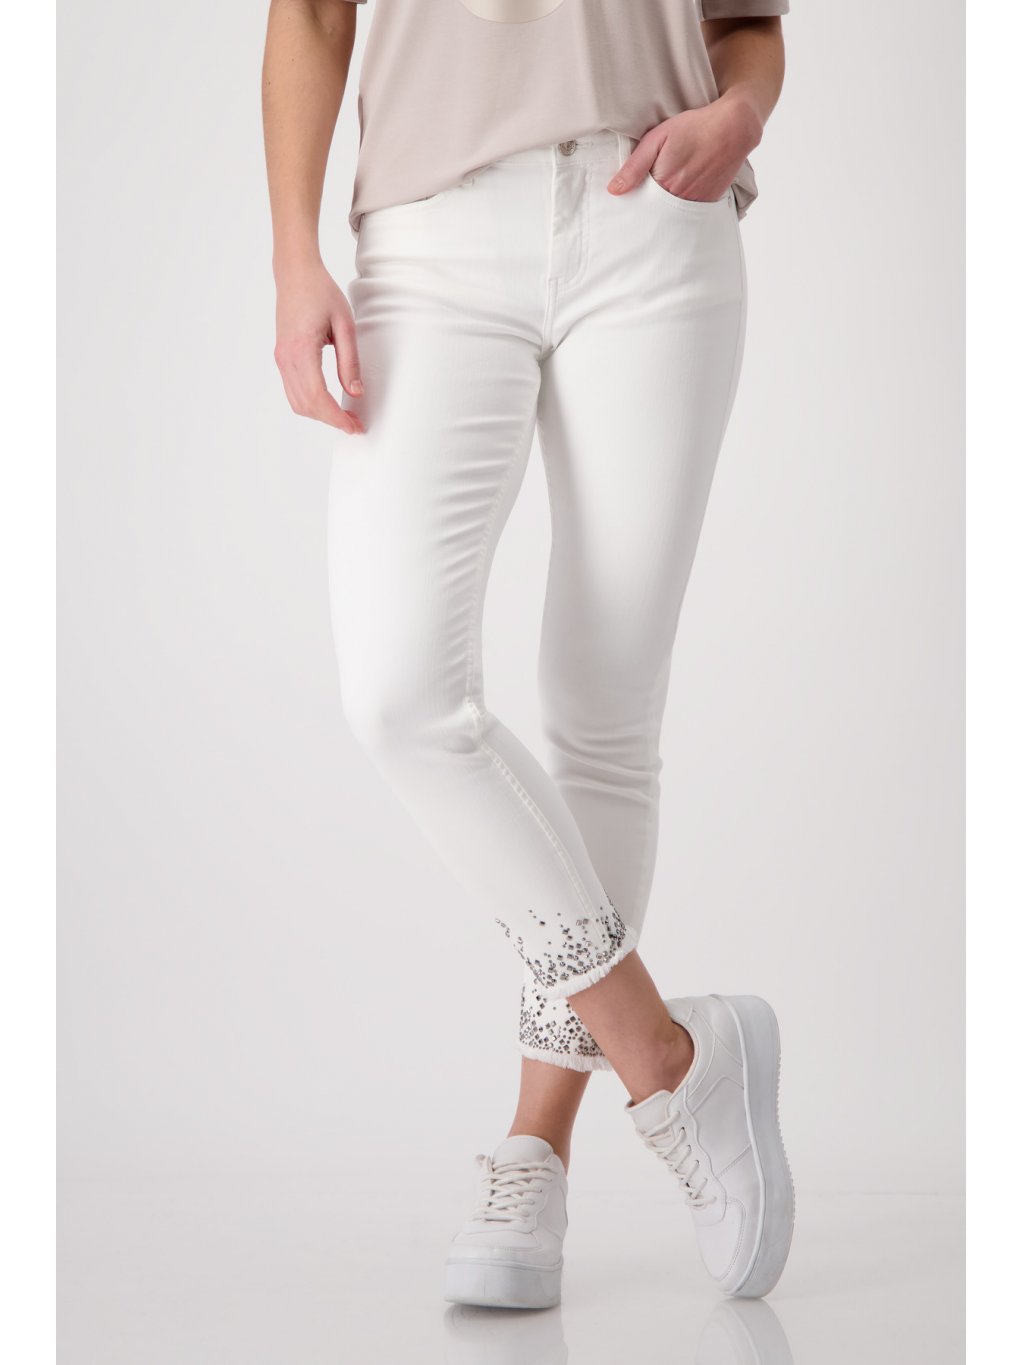 Kalhoty Monari 8395 bílé džíny s kamínky